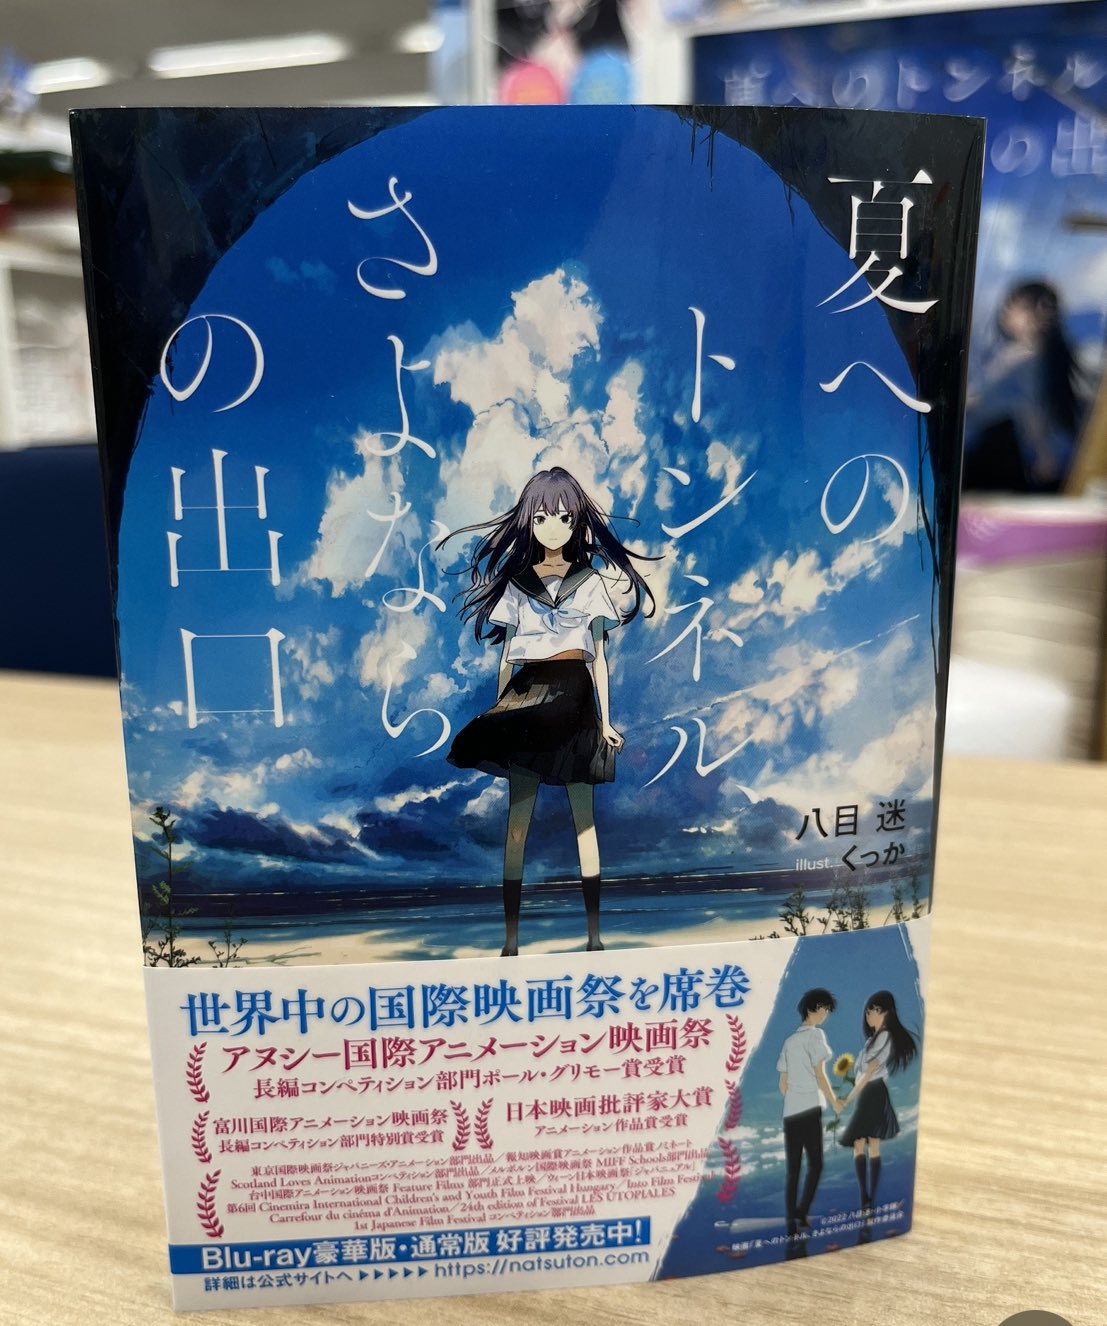 映画「夏へのトンネル、さよならの出口」アヌシー受賞・Blu-ray発売